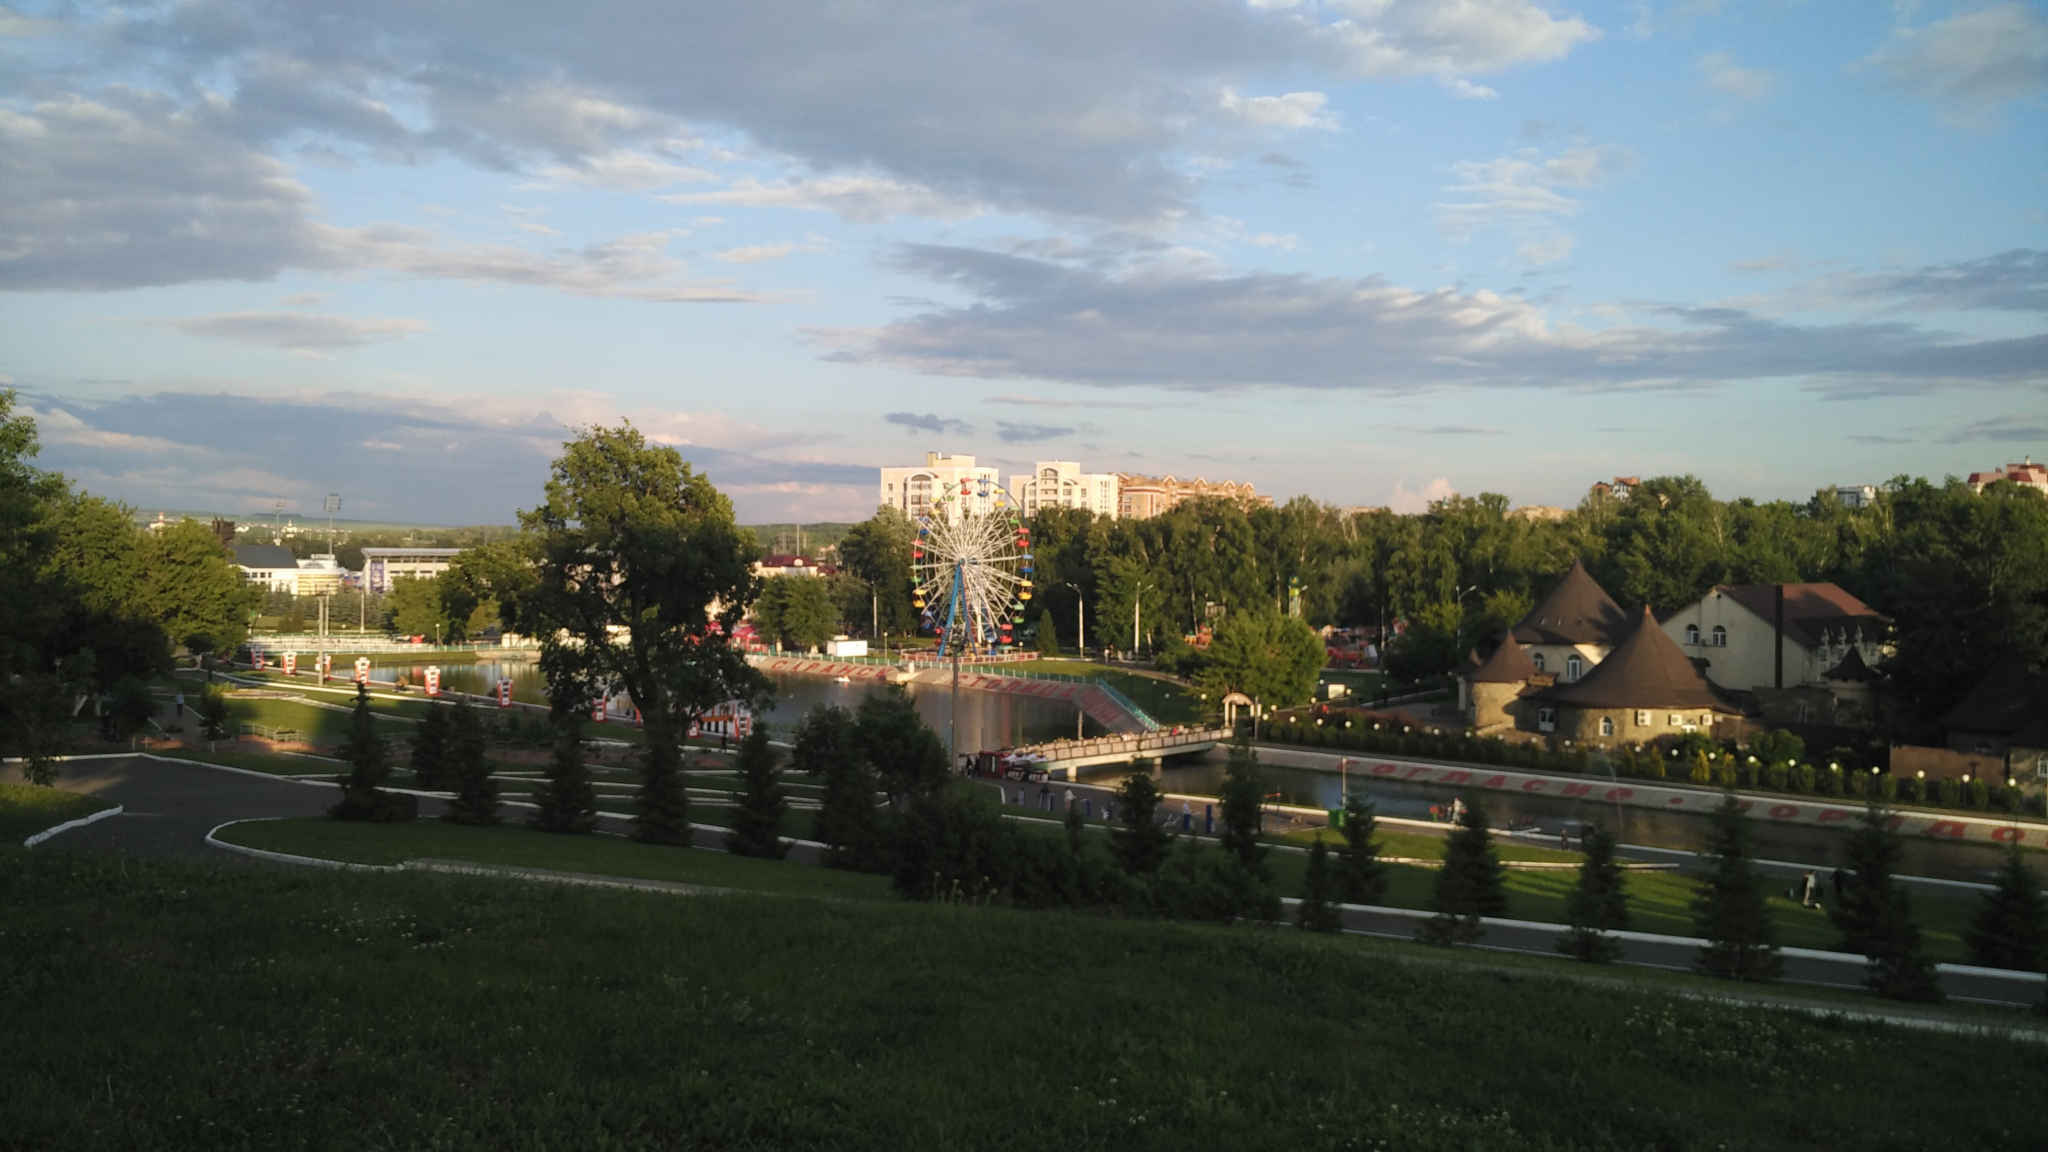 Смягчение ограничений: в Мордовии открываются летние веранды